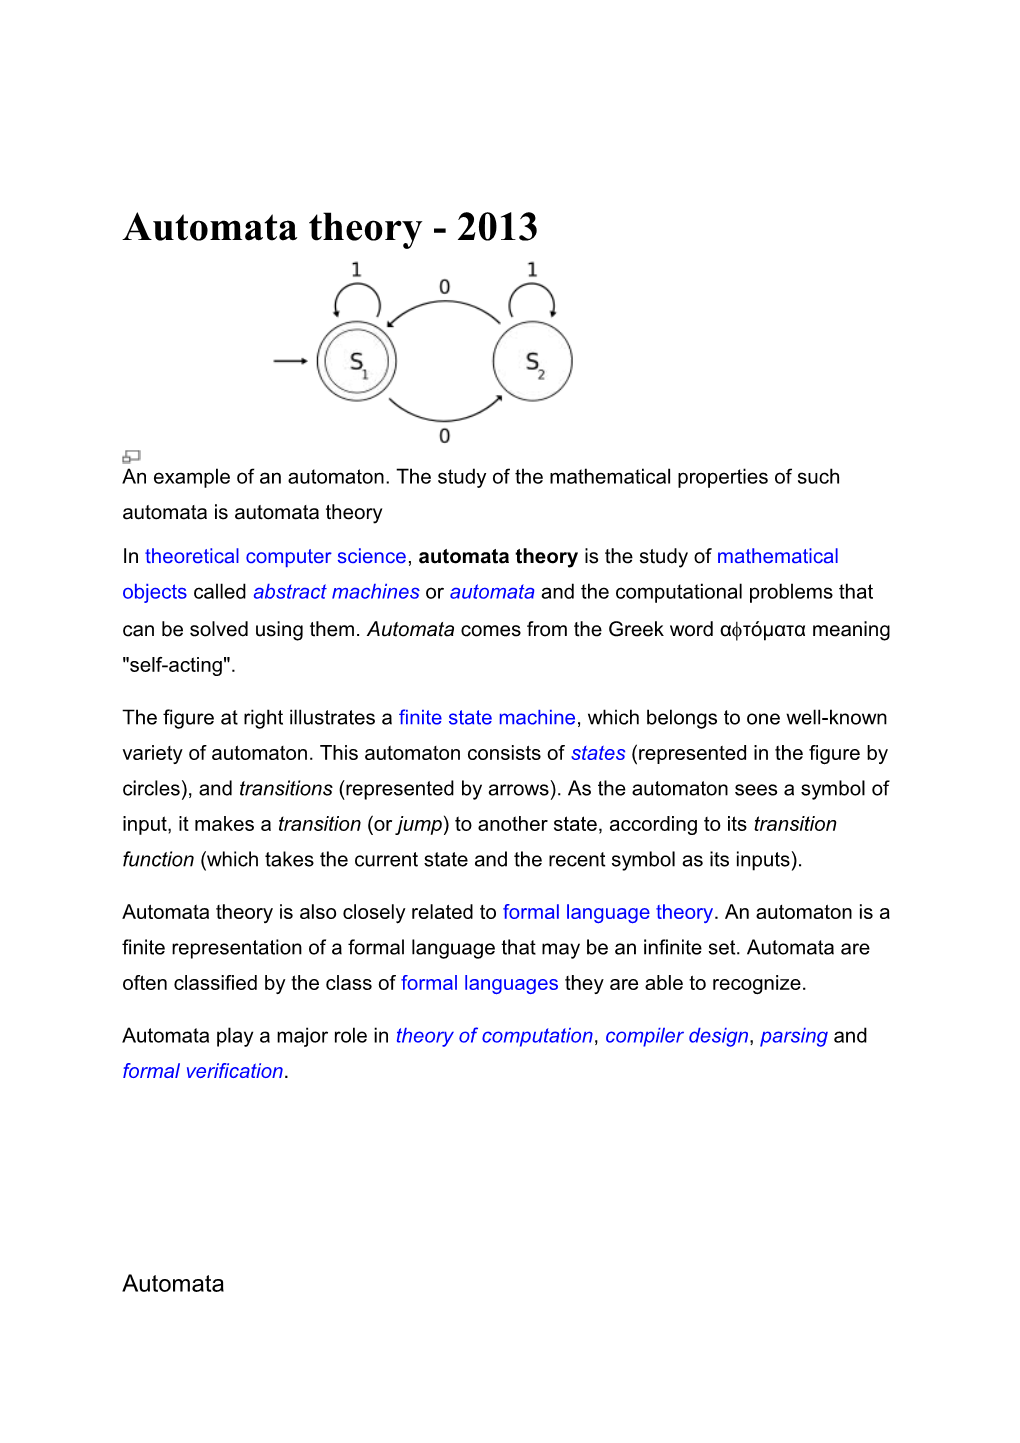 Automata Theory - 2013